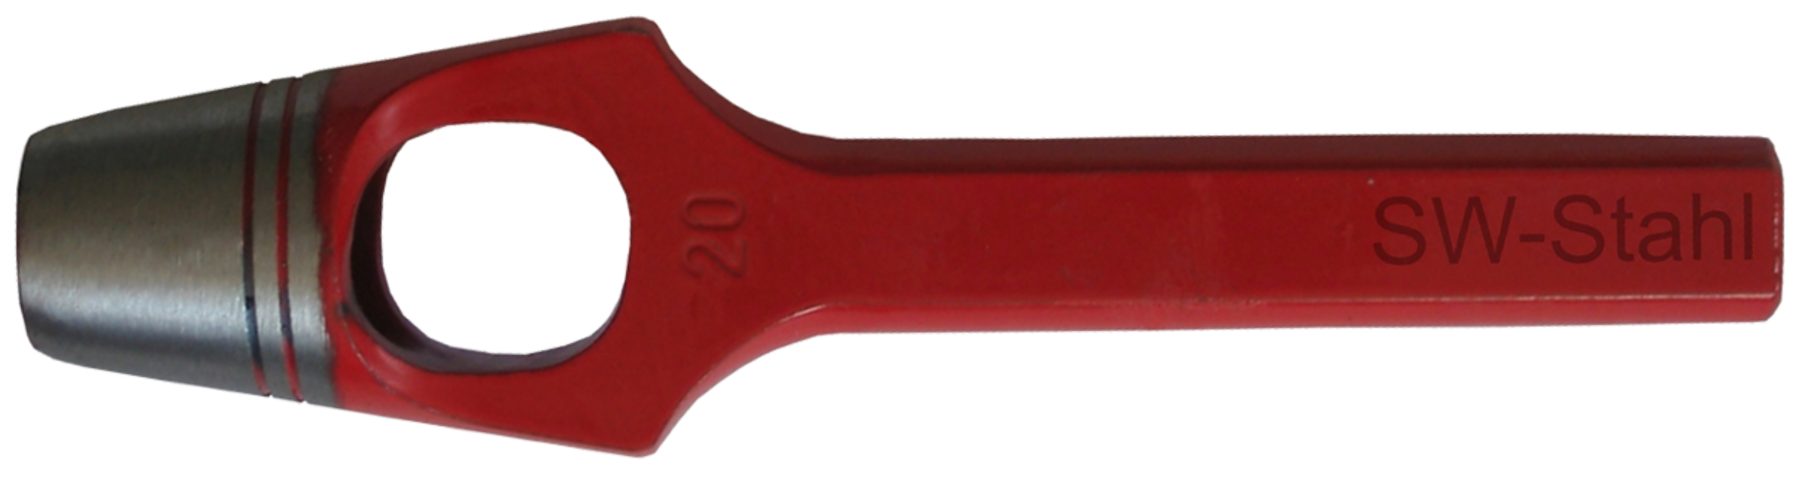 SW-STAHL Multitool 95008L Henkellocheisen ø 8 mm, rot lackiert, geschliffen